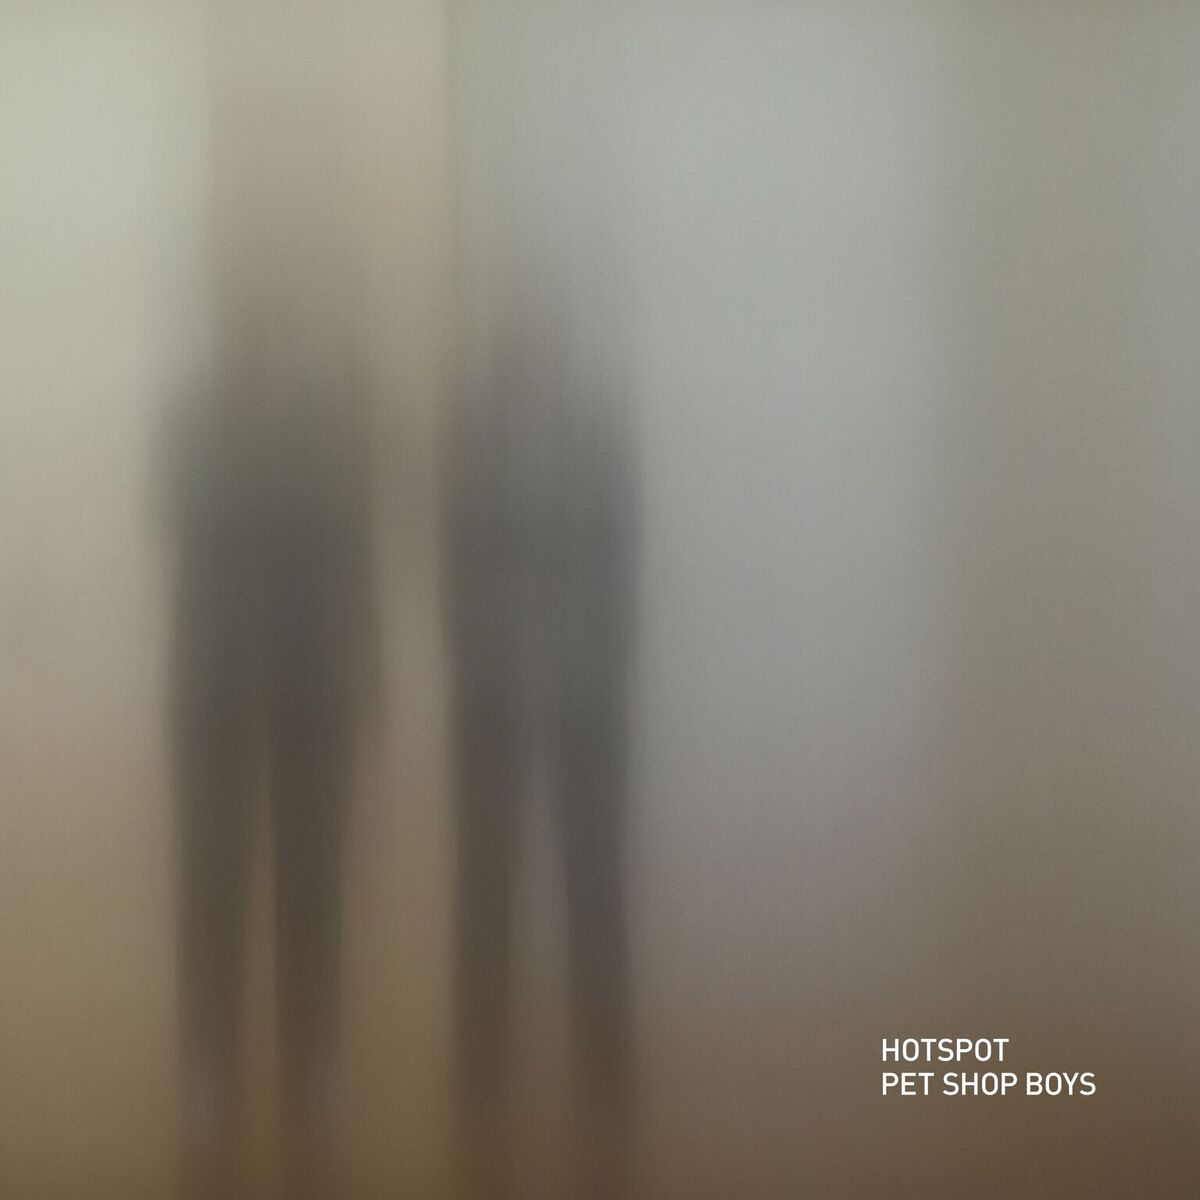 Pet Shop Boys – “Hotspot“ (X2 Recordings/Rough Trade)